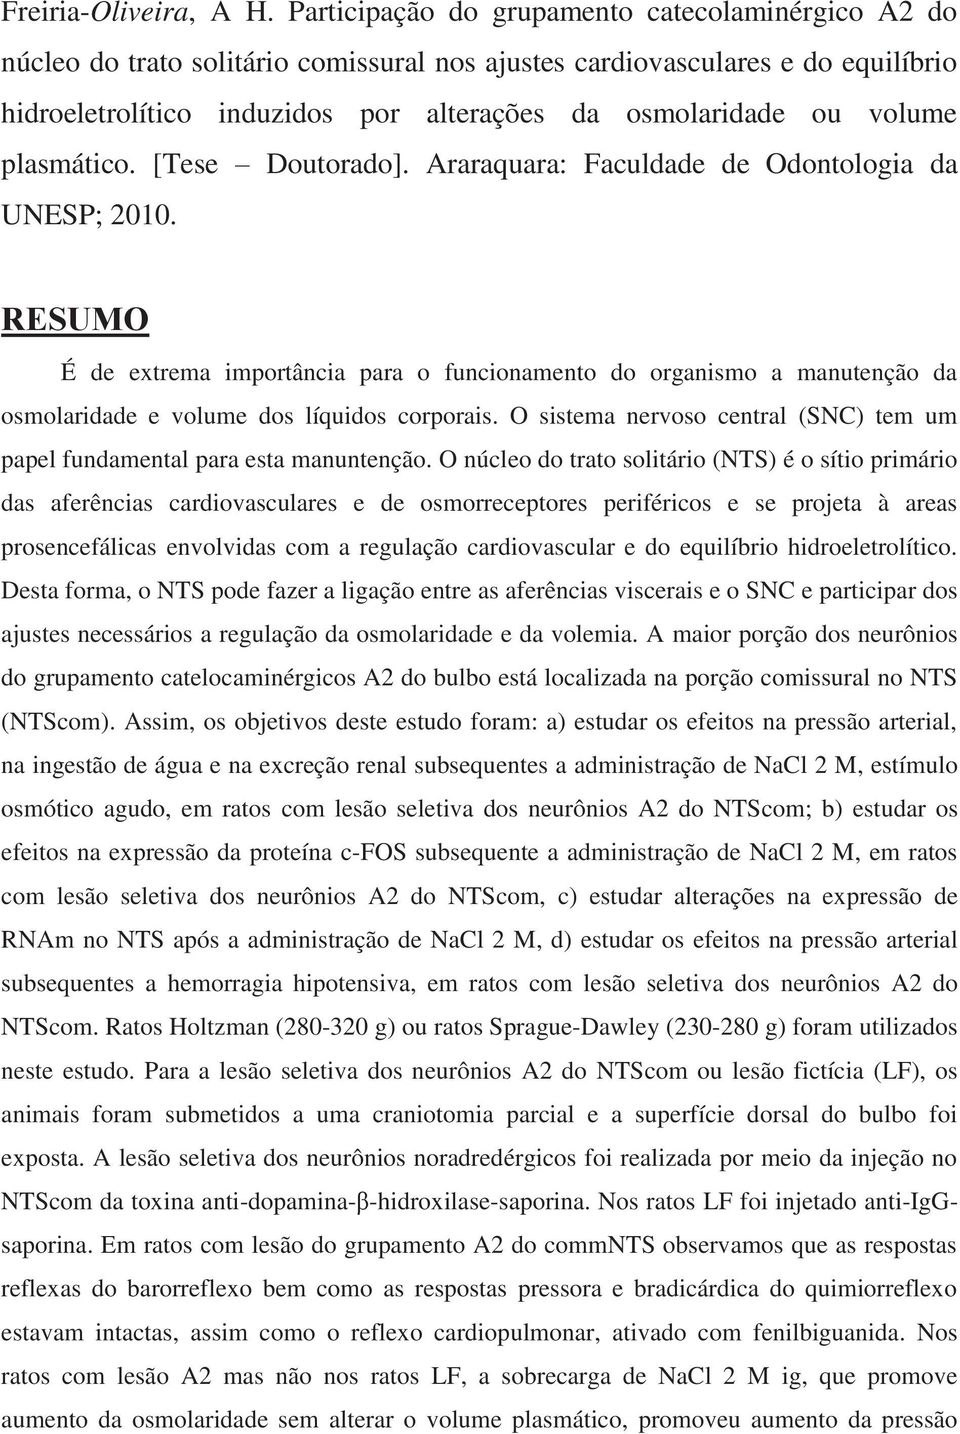 volume plasmático. [Tese Doutorado]. Araraquara: Faculdade de Odontologia da UNESP; 2010.